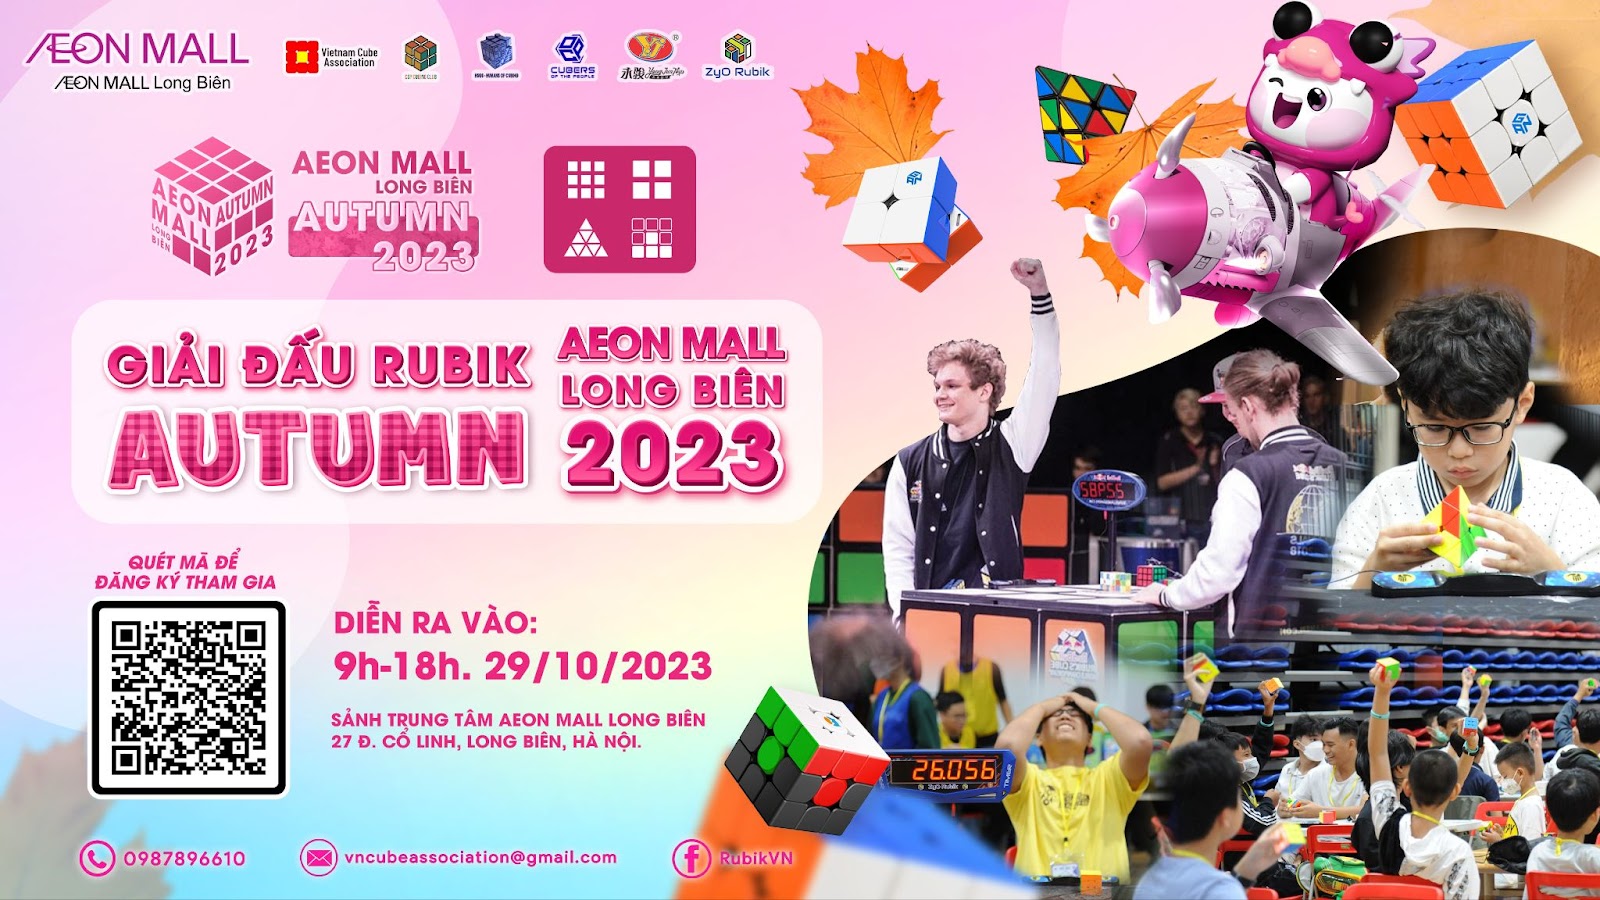 Rubik Fest 2023: Sự Kiện Chơi Rubik Lớn Nhất Tại Aeon Mall Long Biên